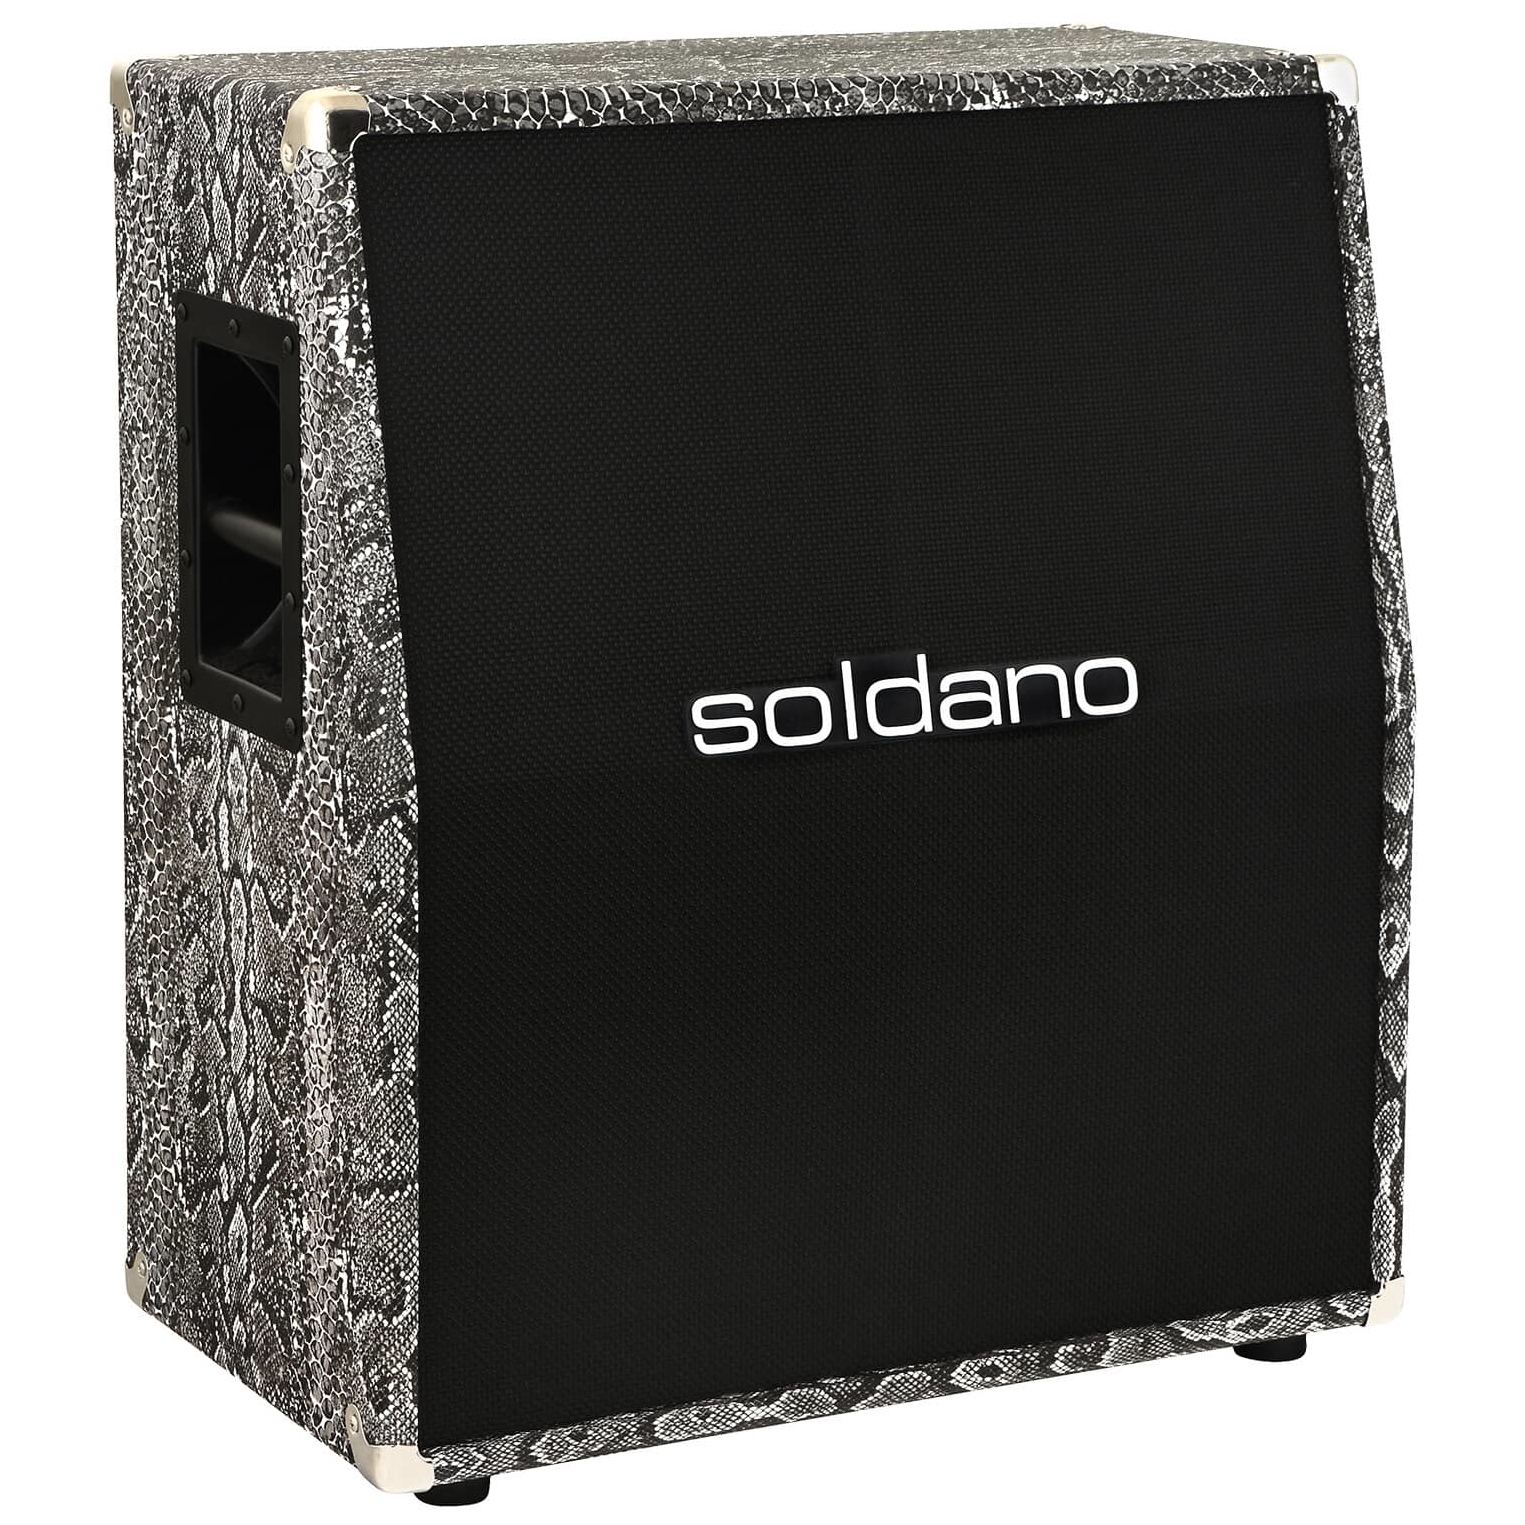 Soldano 212-Custom Cabinet Slant Snake Skin